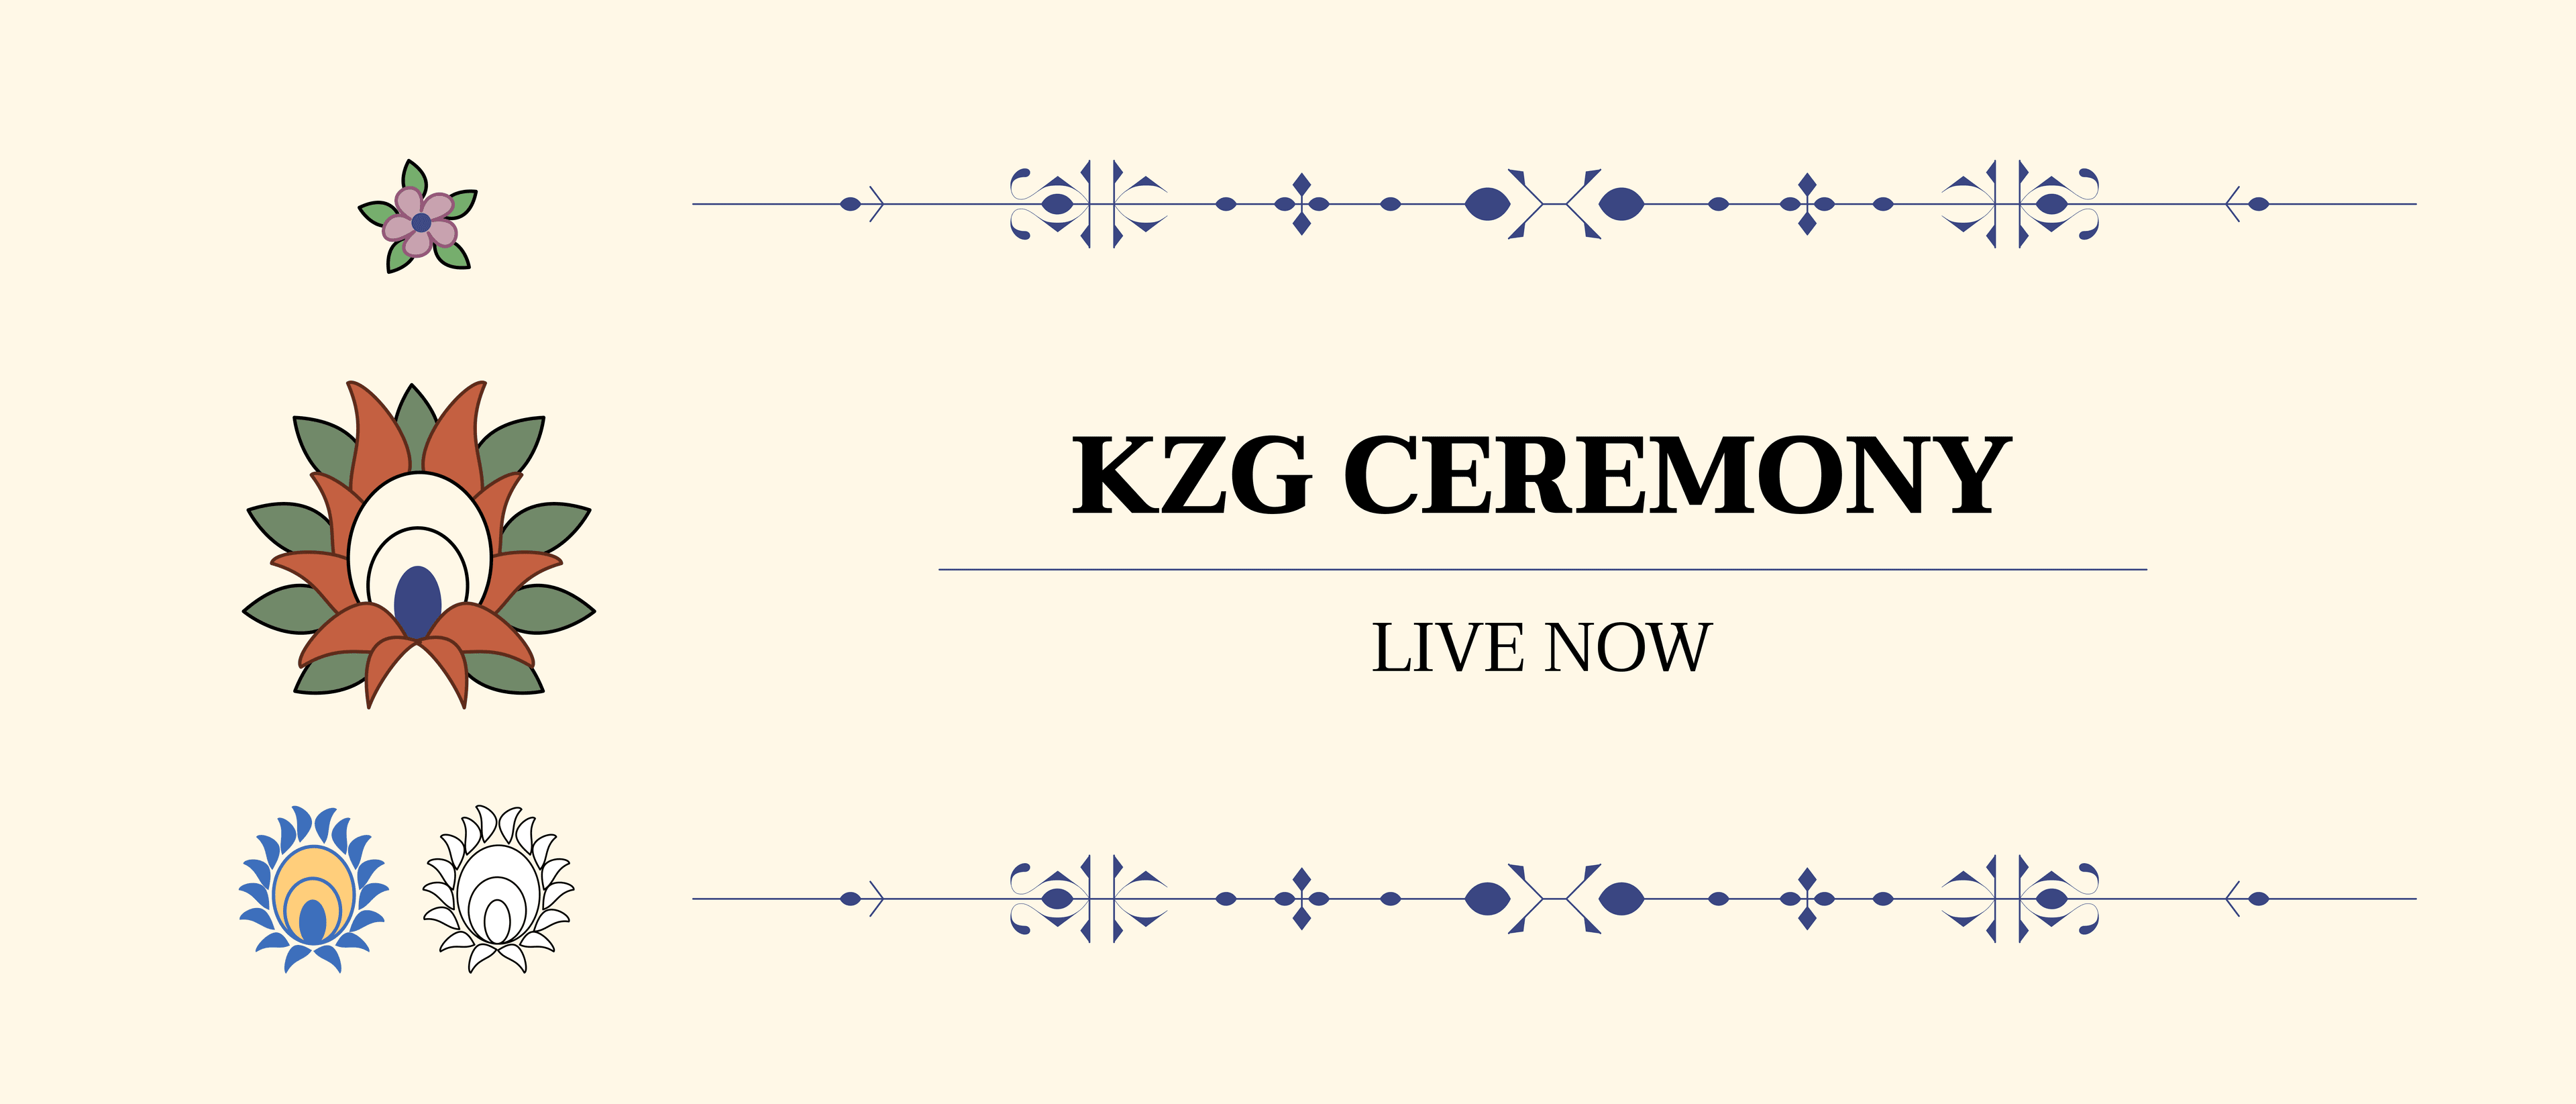 الإعلان عن حفل KZG